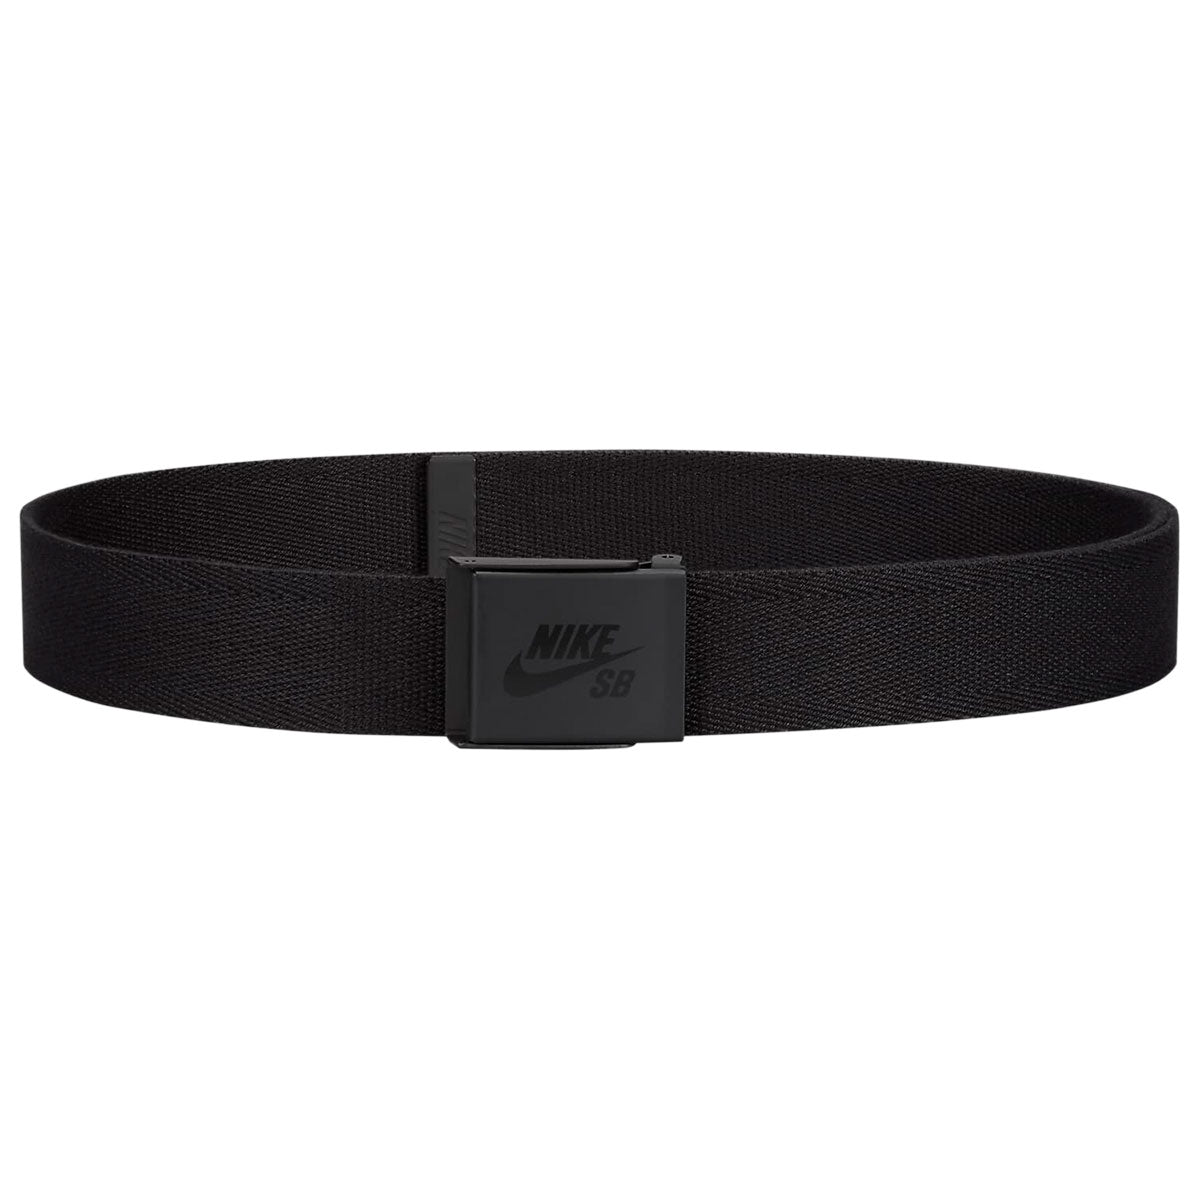 Nike SB Solid Web Belt - Black image 1